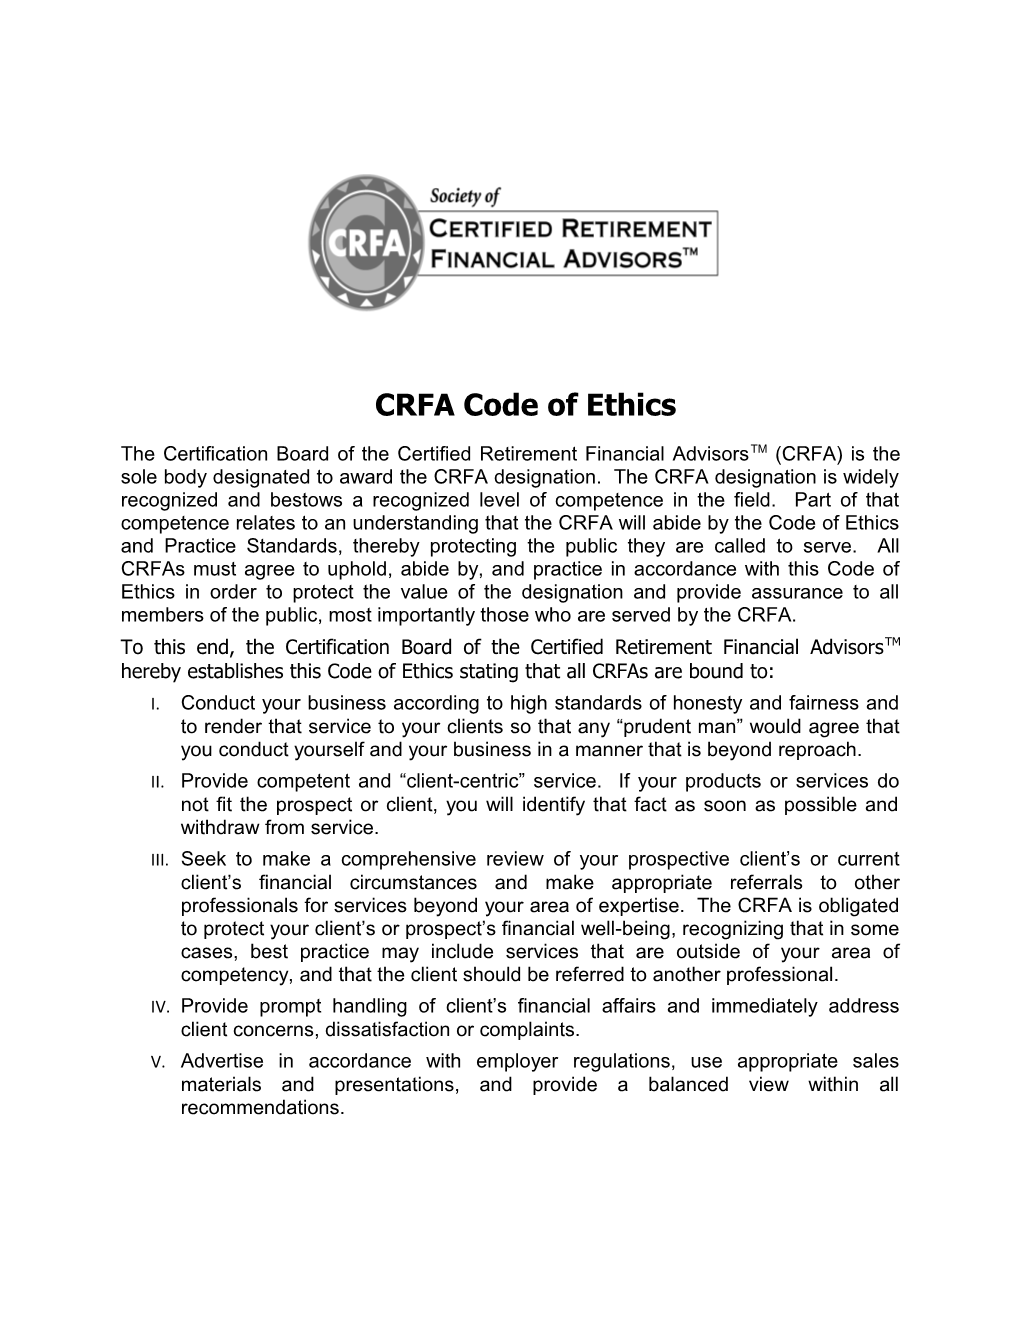 CRFA Code of Ethics